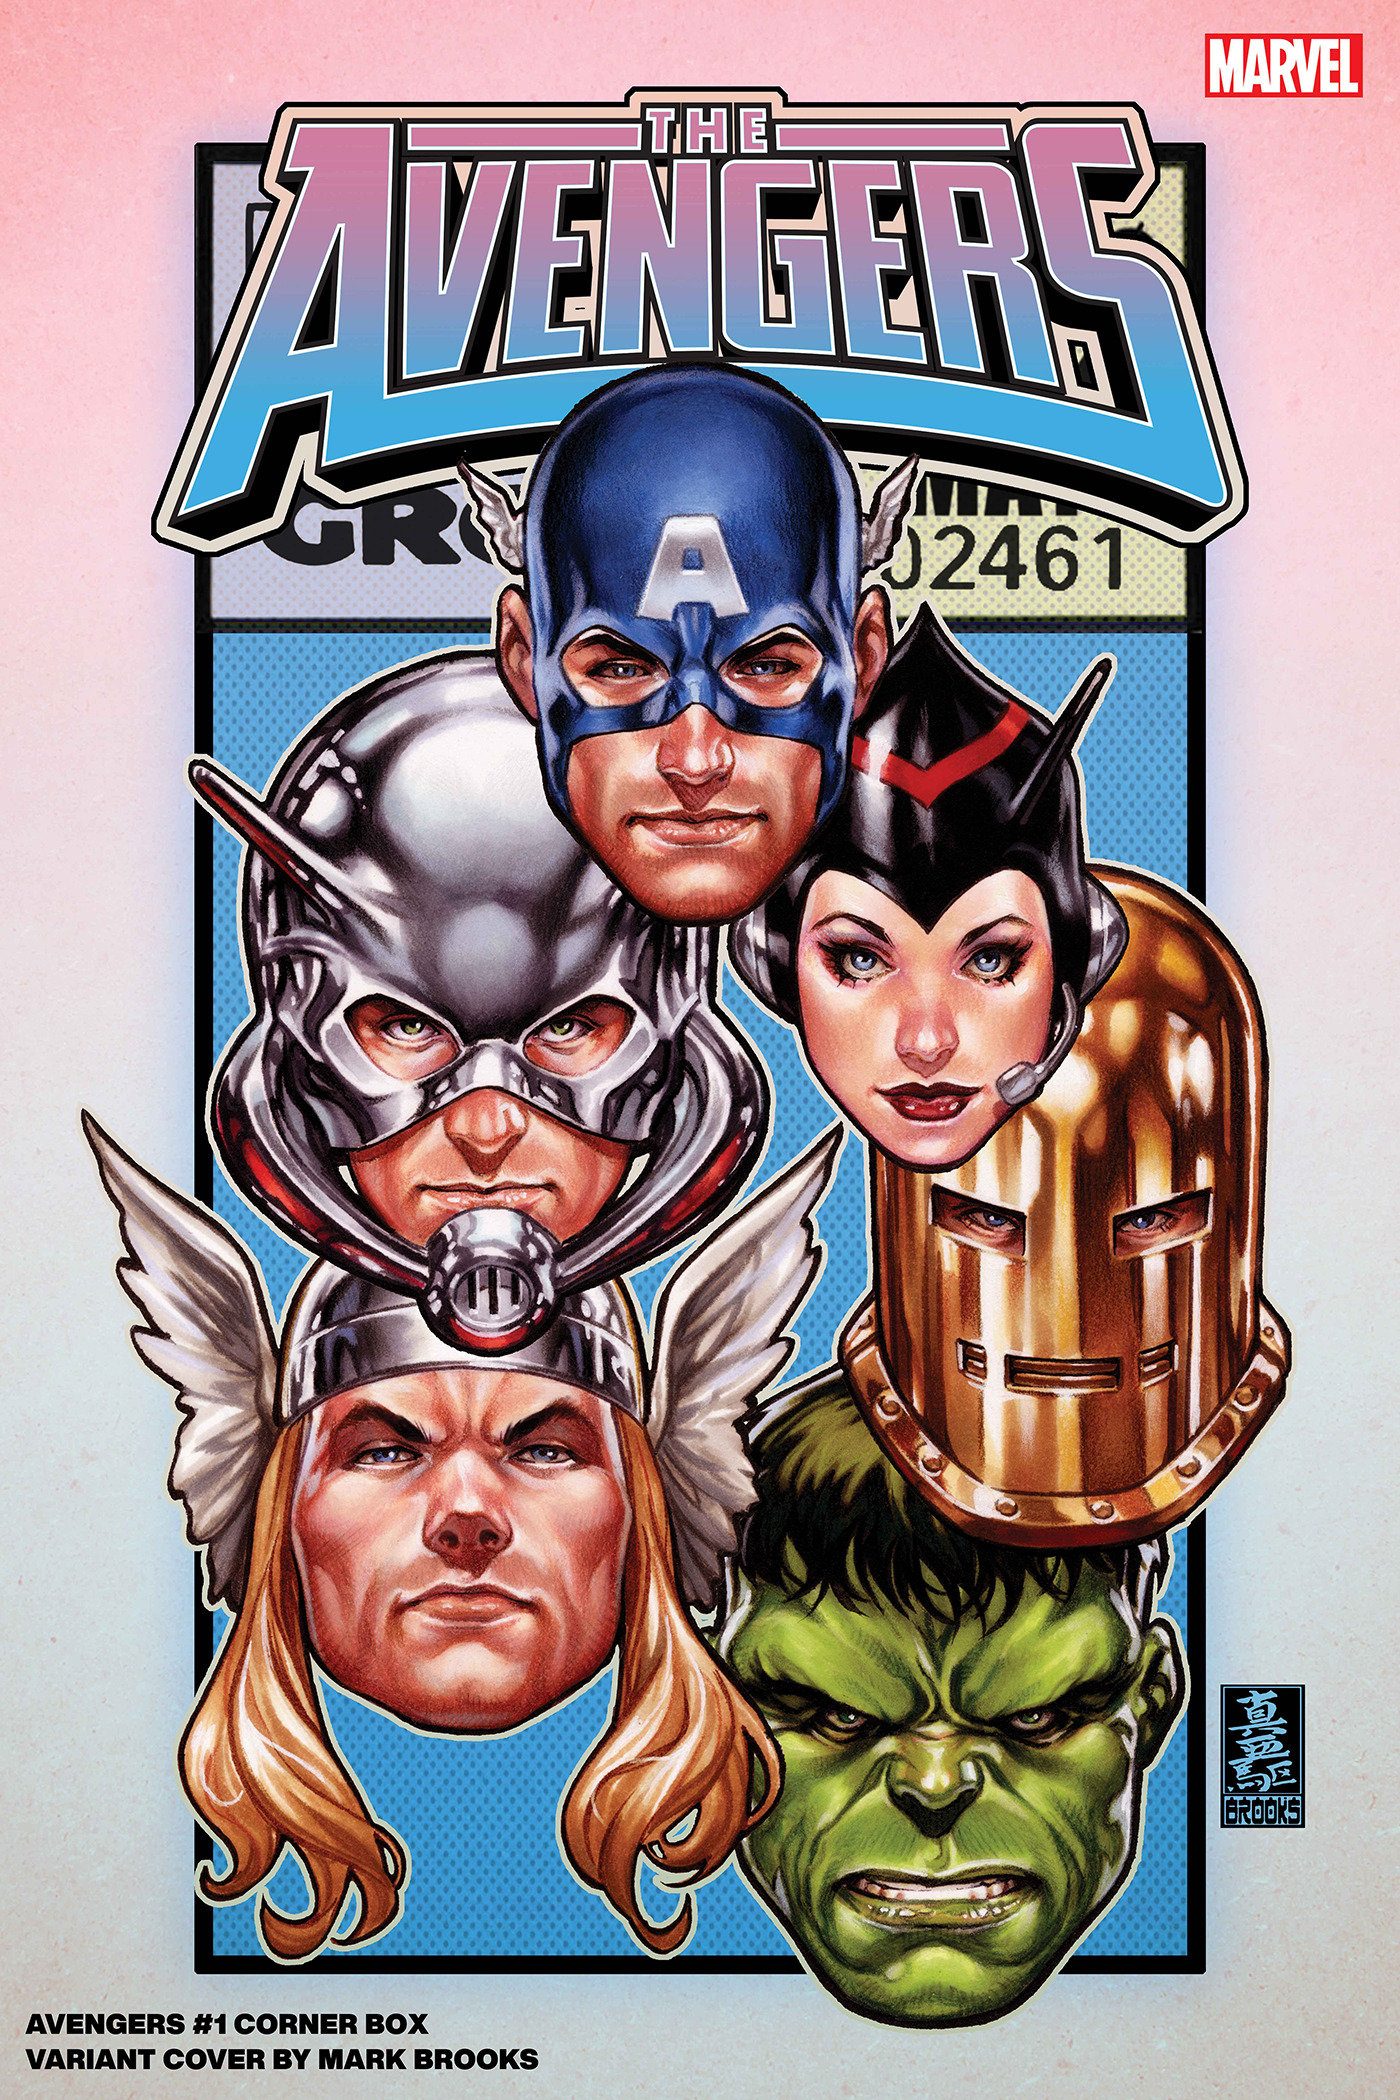 Avengers #1 Mark Brooks Corner Box Variant